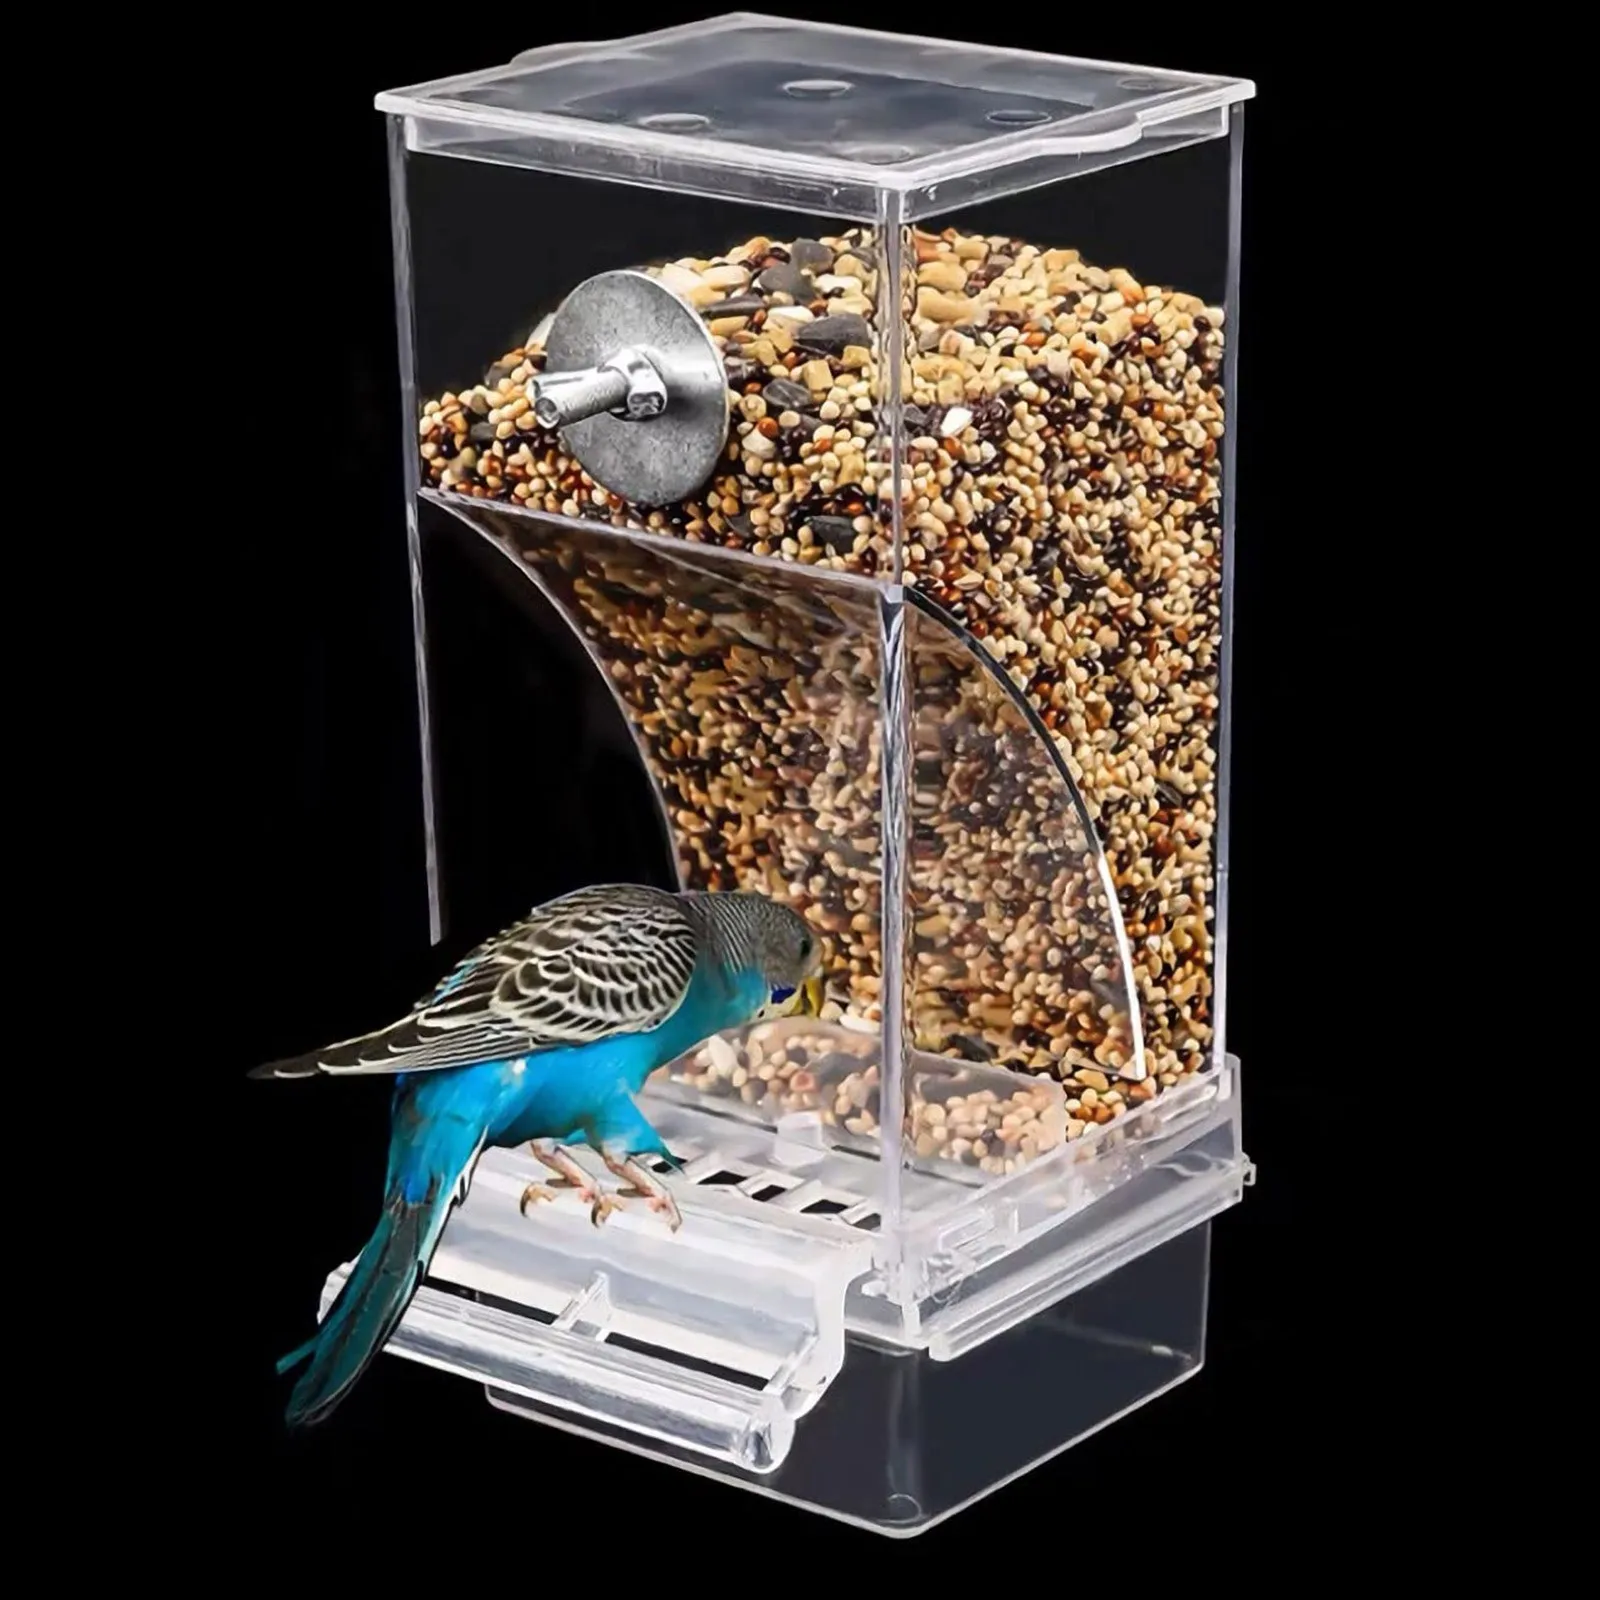 

Автоматическая кормушка для птиц, подвесная кормушка для птиц, автоматический пищевой диспенсер, акриловый контейнер для еды, птичьи клетки, аксессуары для попугаев